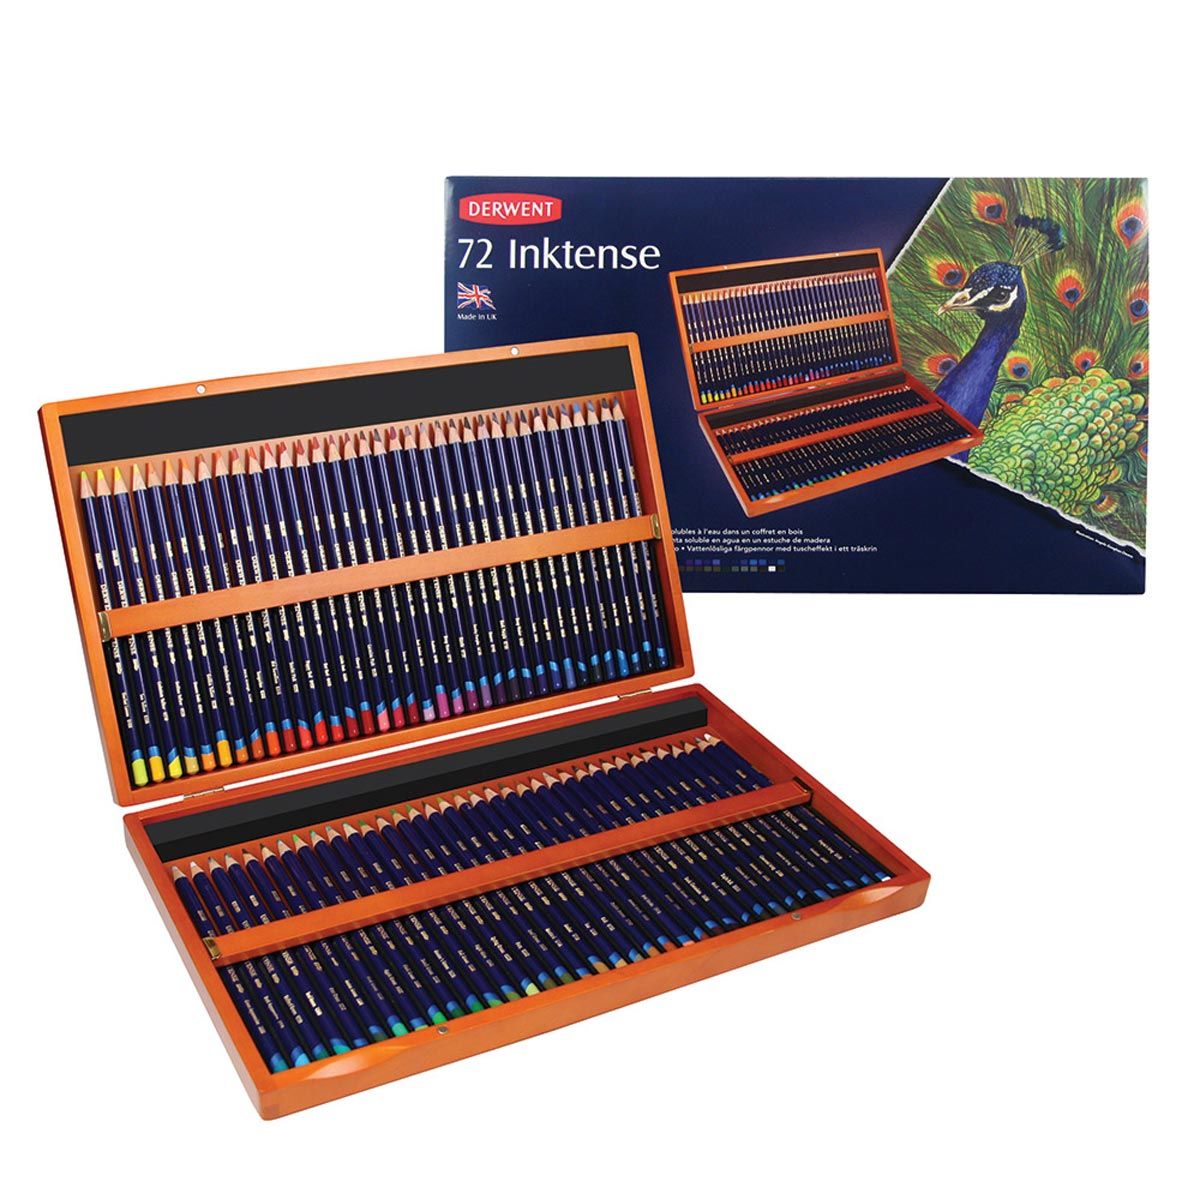 Derwent Inktense Watersoluble Pencils 72 Piece Wooden Box Set